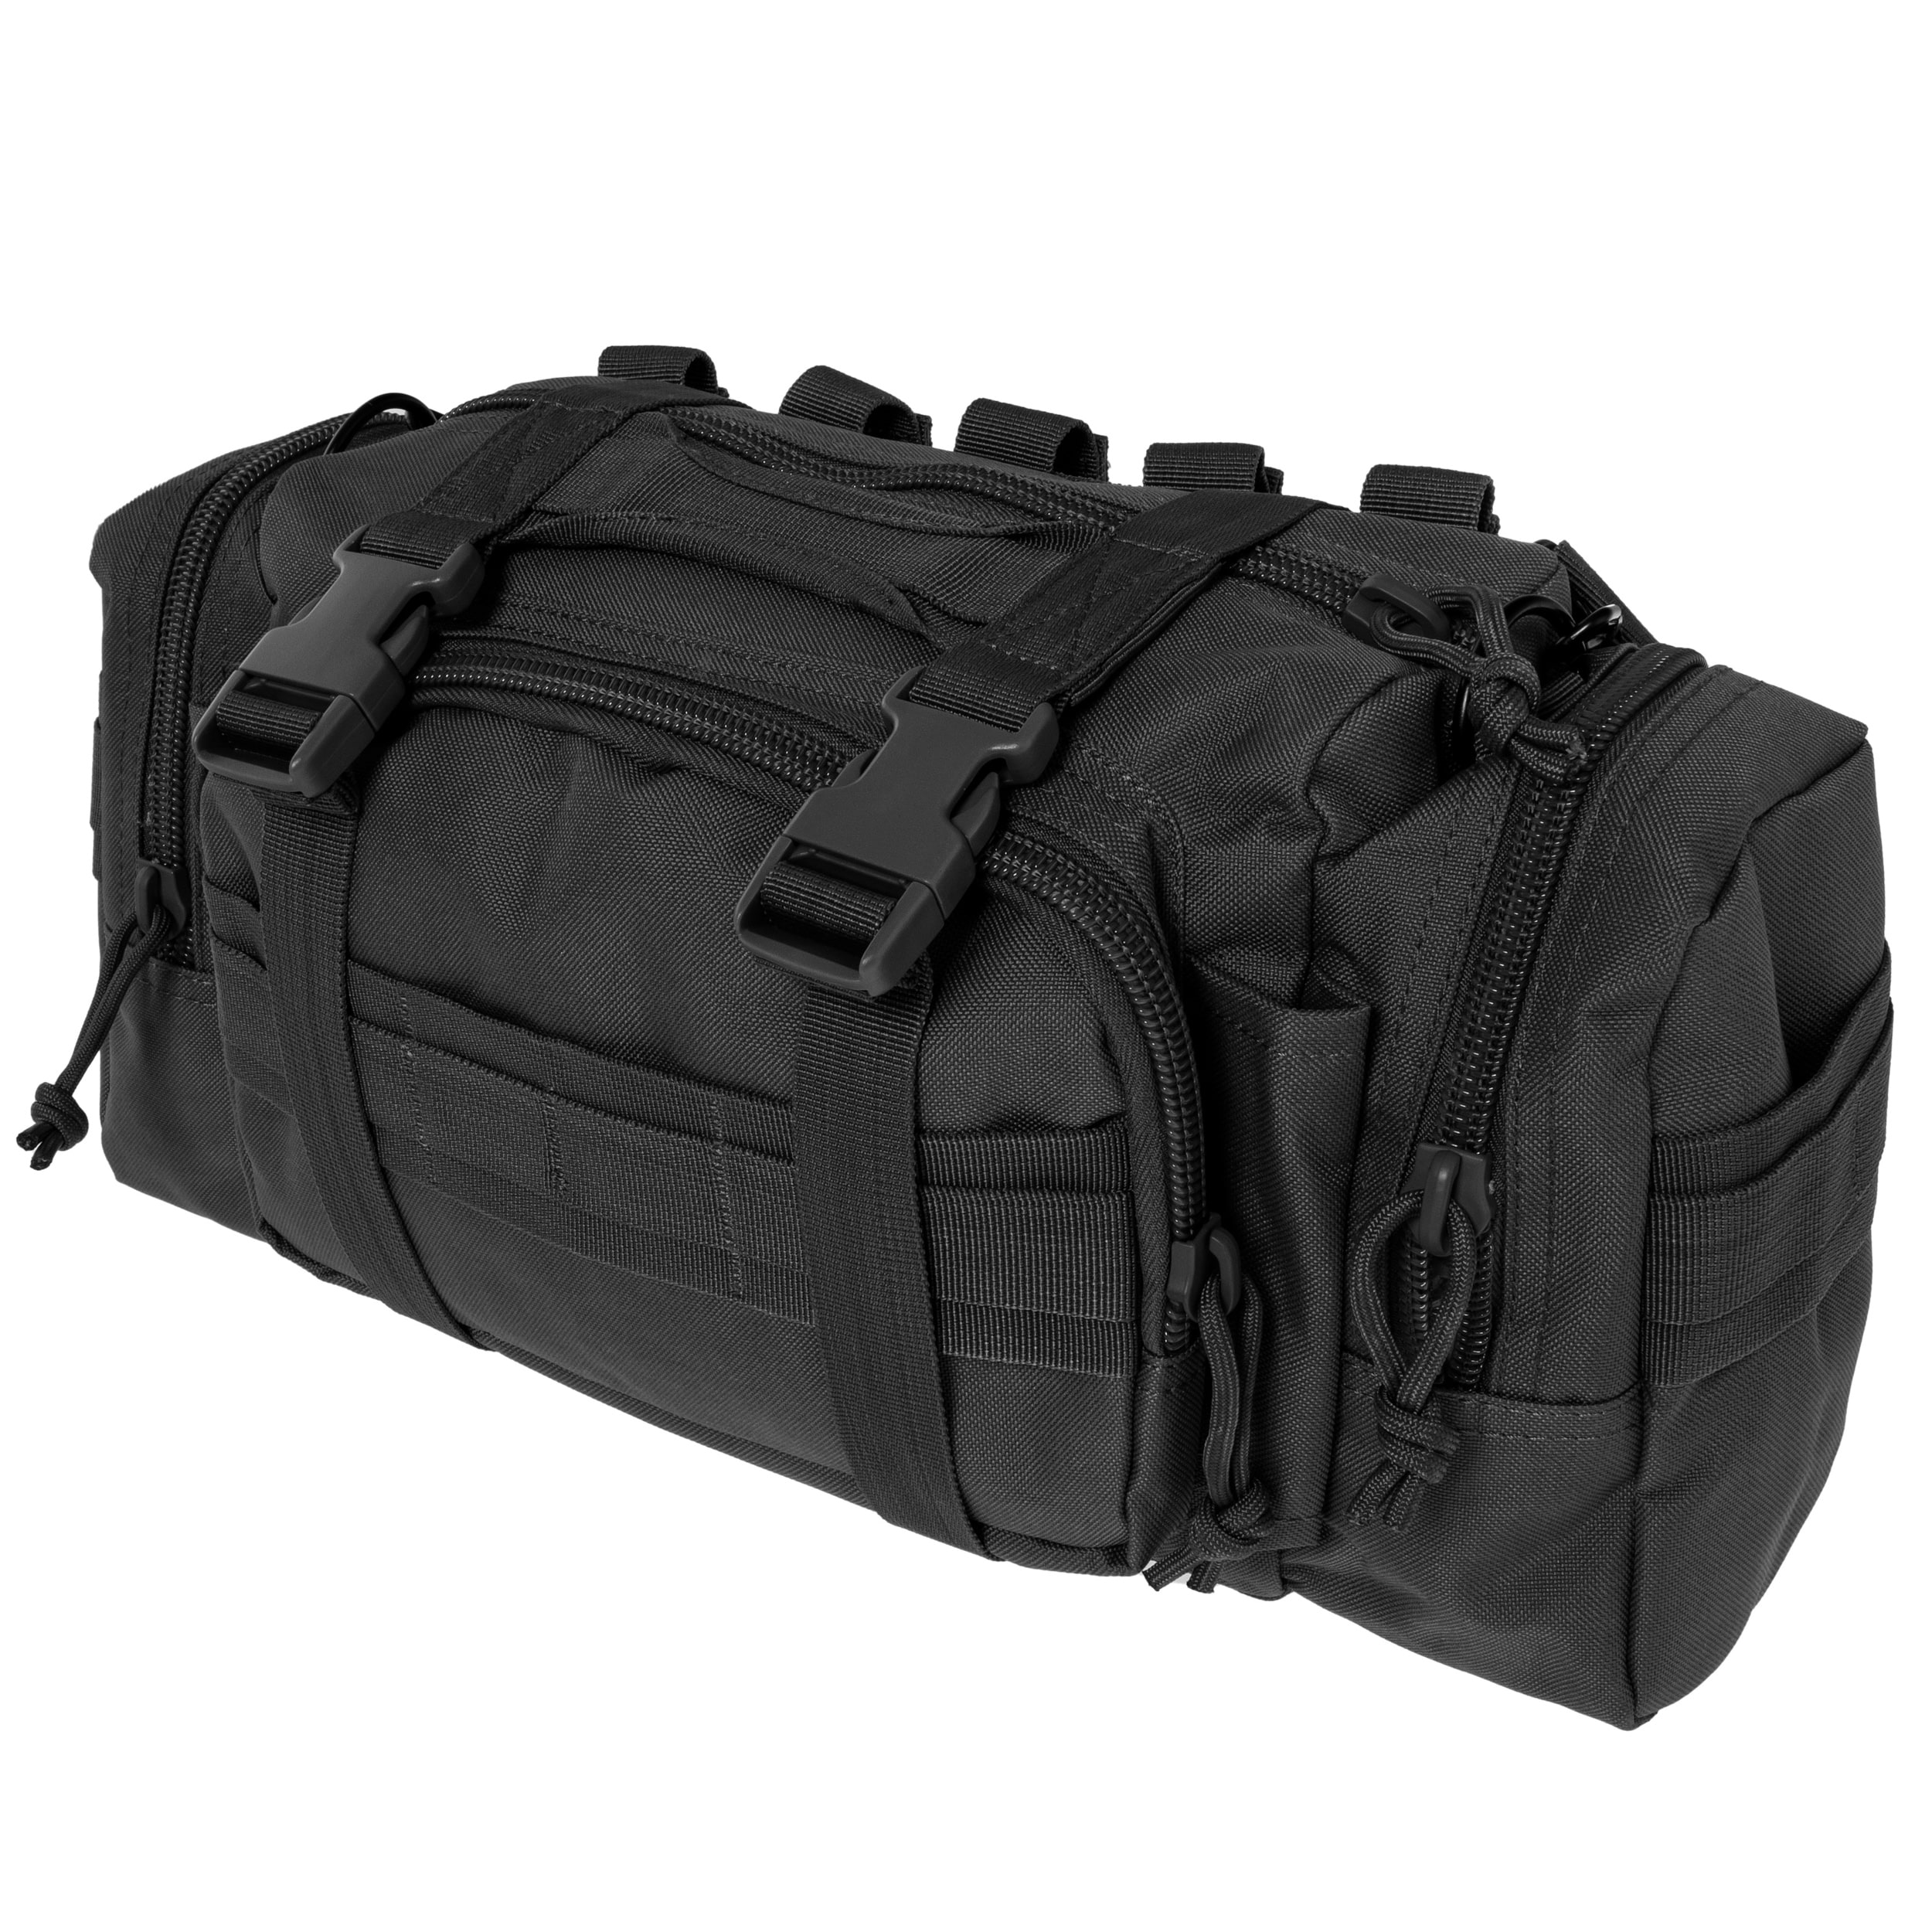 Torba Voodoo Tactical Enlarged 3-Way Deployment Bag - Black